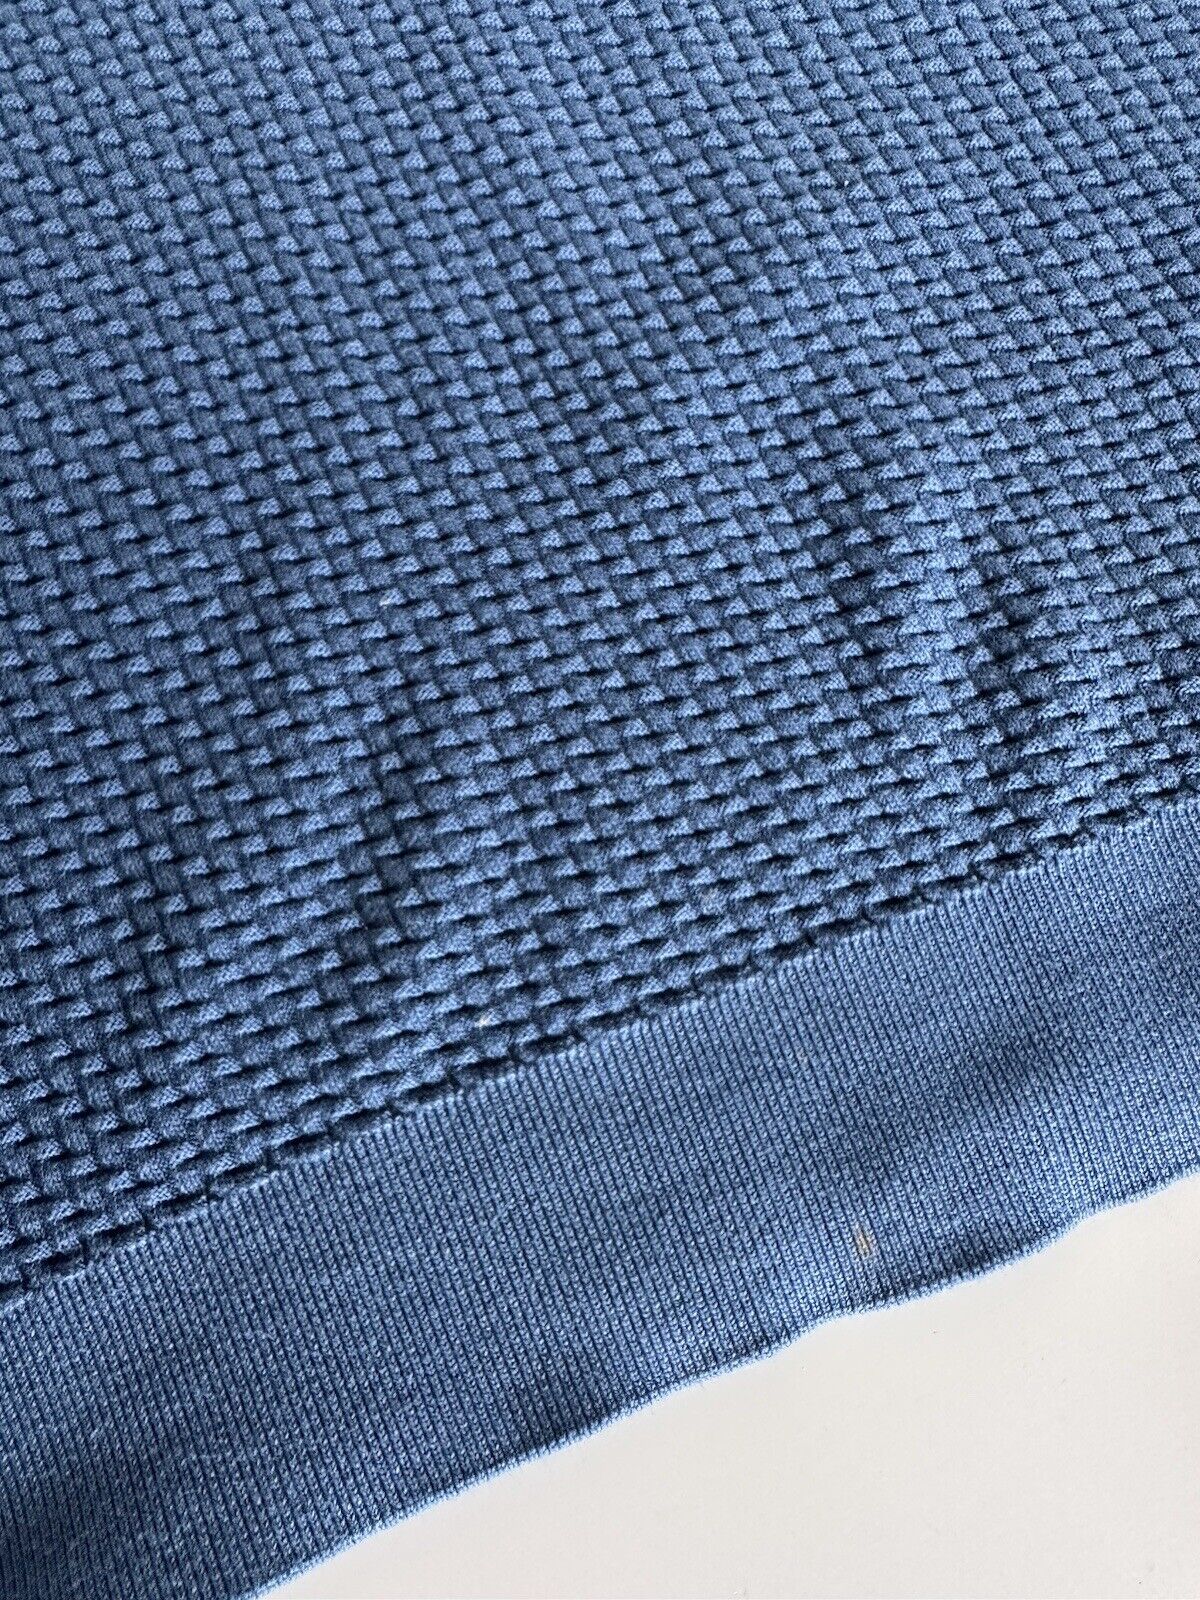 Emporio Armani Men's Blue Cotton Sweater 2XL